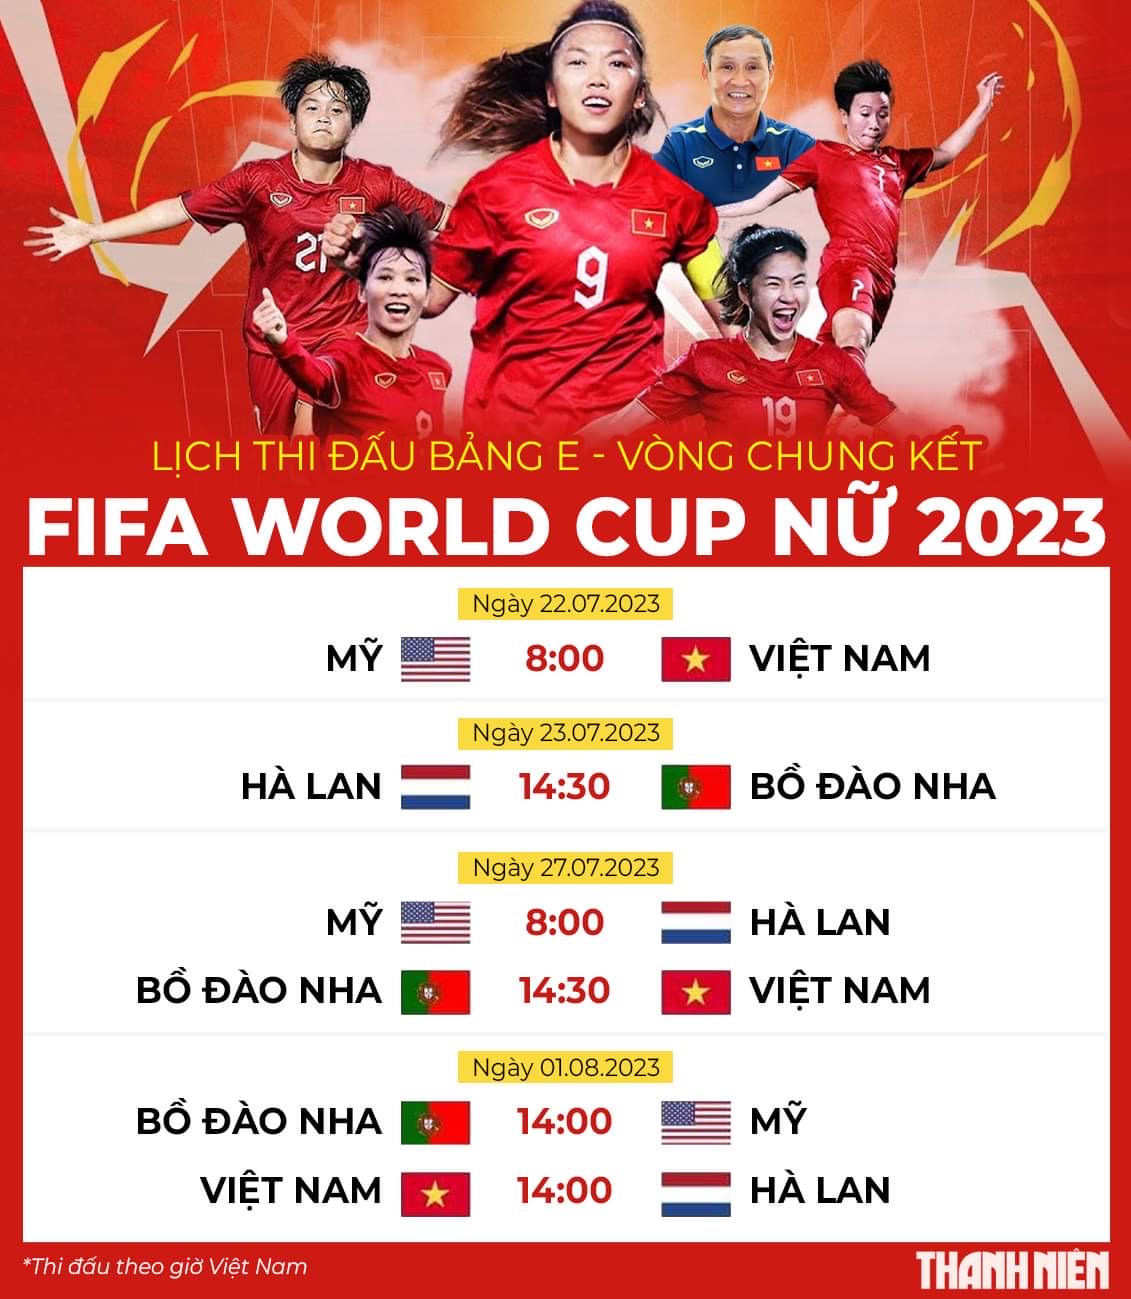 Khán giả xem 64 trận World Cup 2023 trên sóng truyền hình, thêm Viettel và VTVcab mua bản quyền - Ảnh 1.